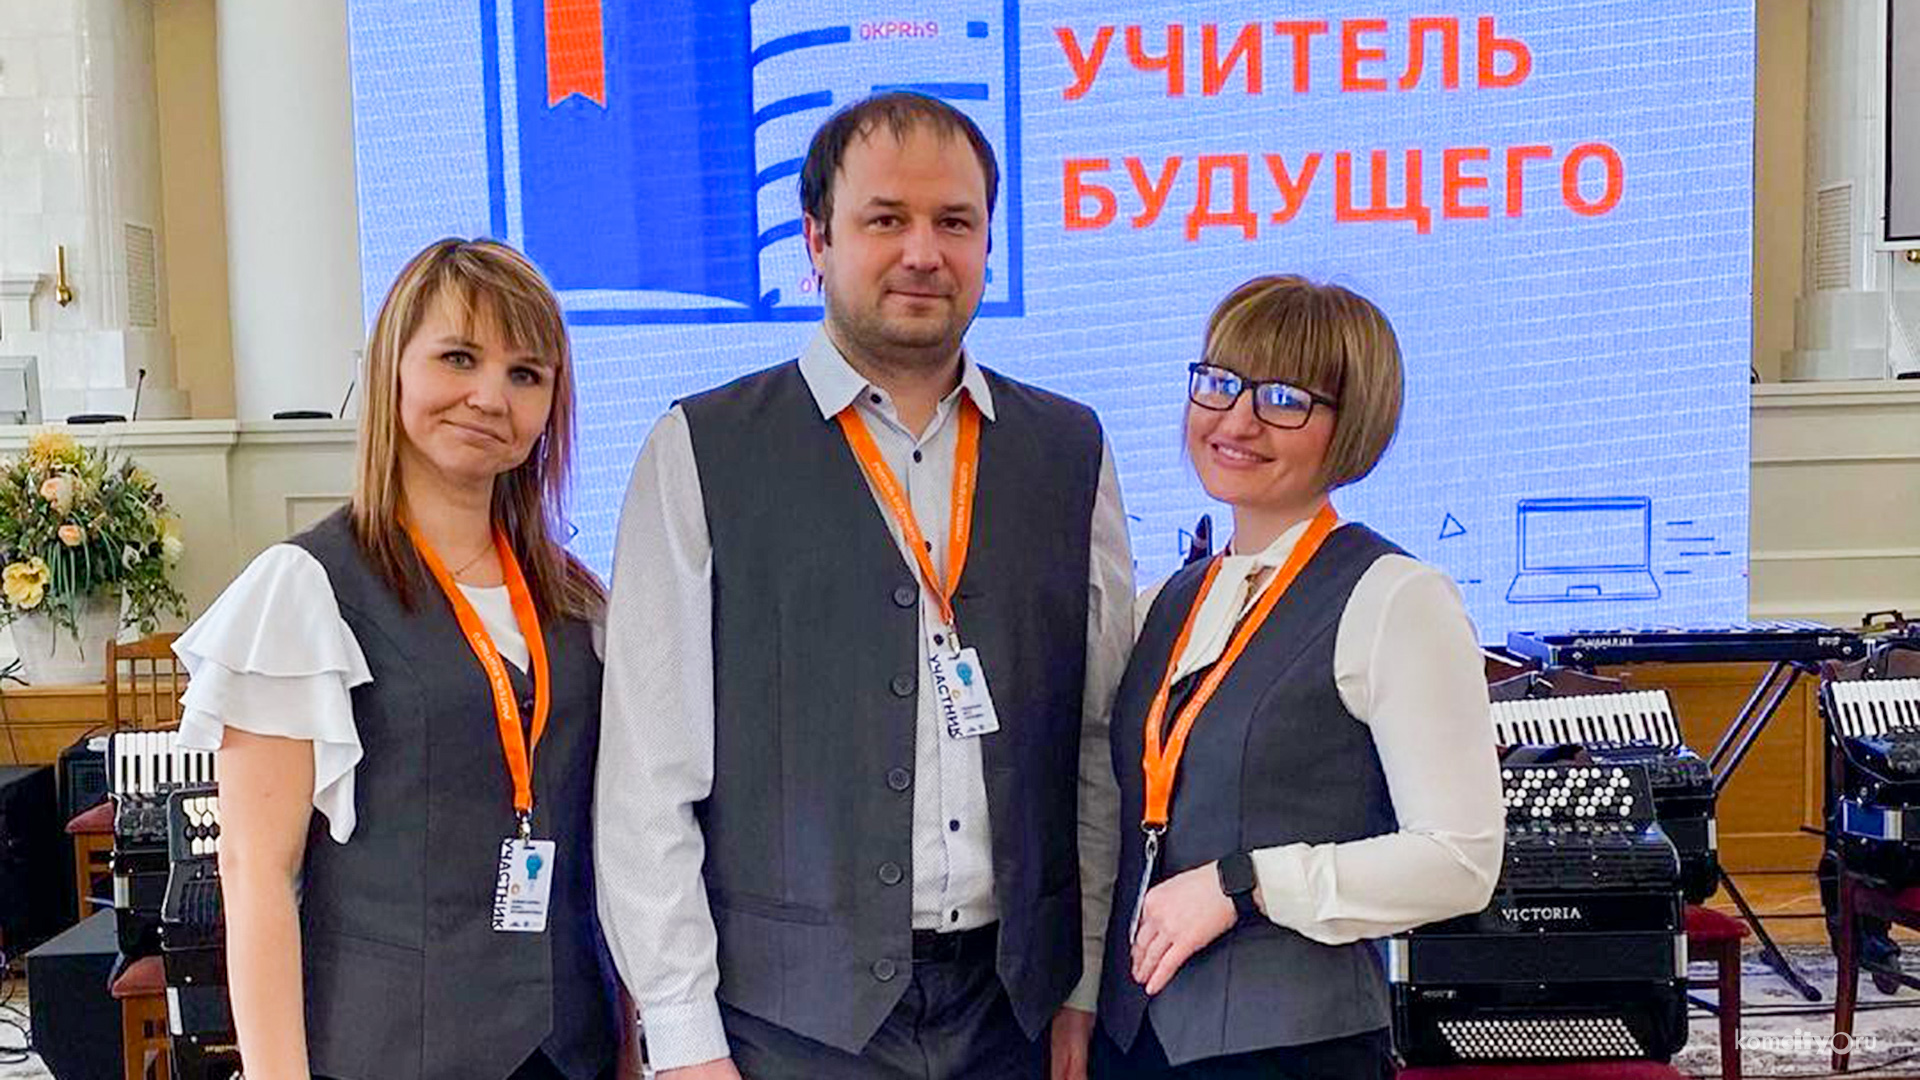 Педагоги из Комсомольска-на-Амуре стали победителями всероссийского конкурса «Учитель Будущего»